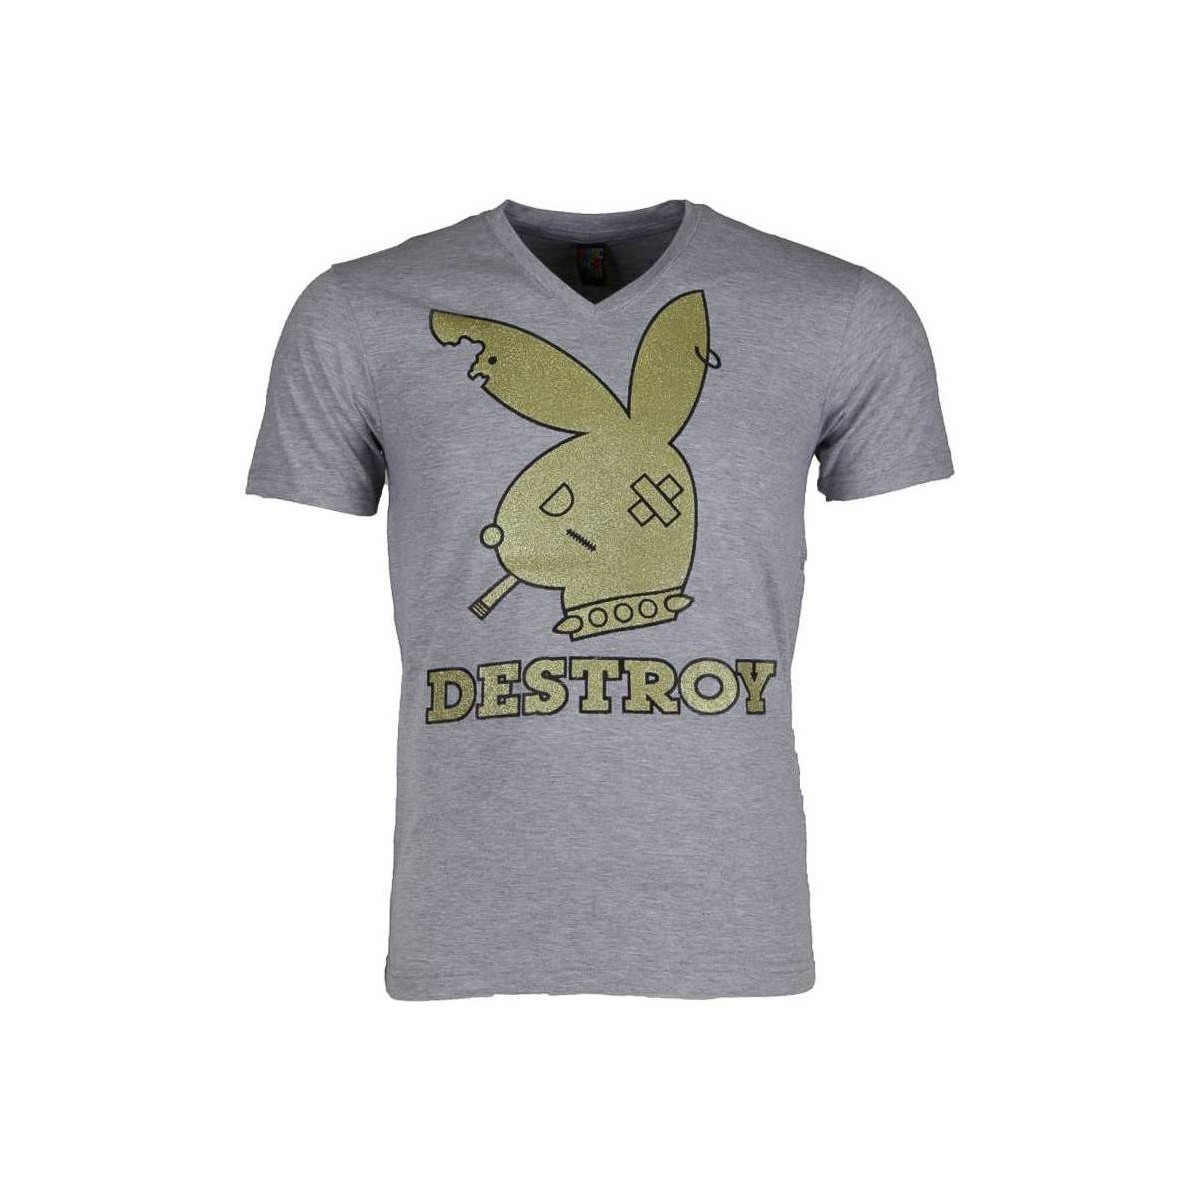 textil Herr T-shirts Local Fanatic Bunny Destroy Grå